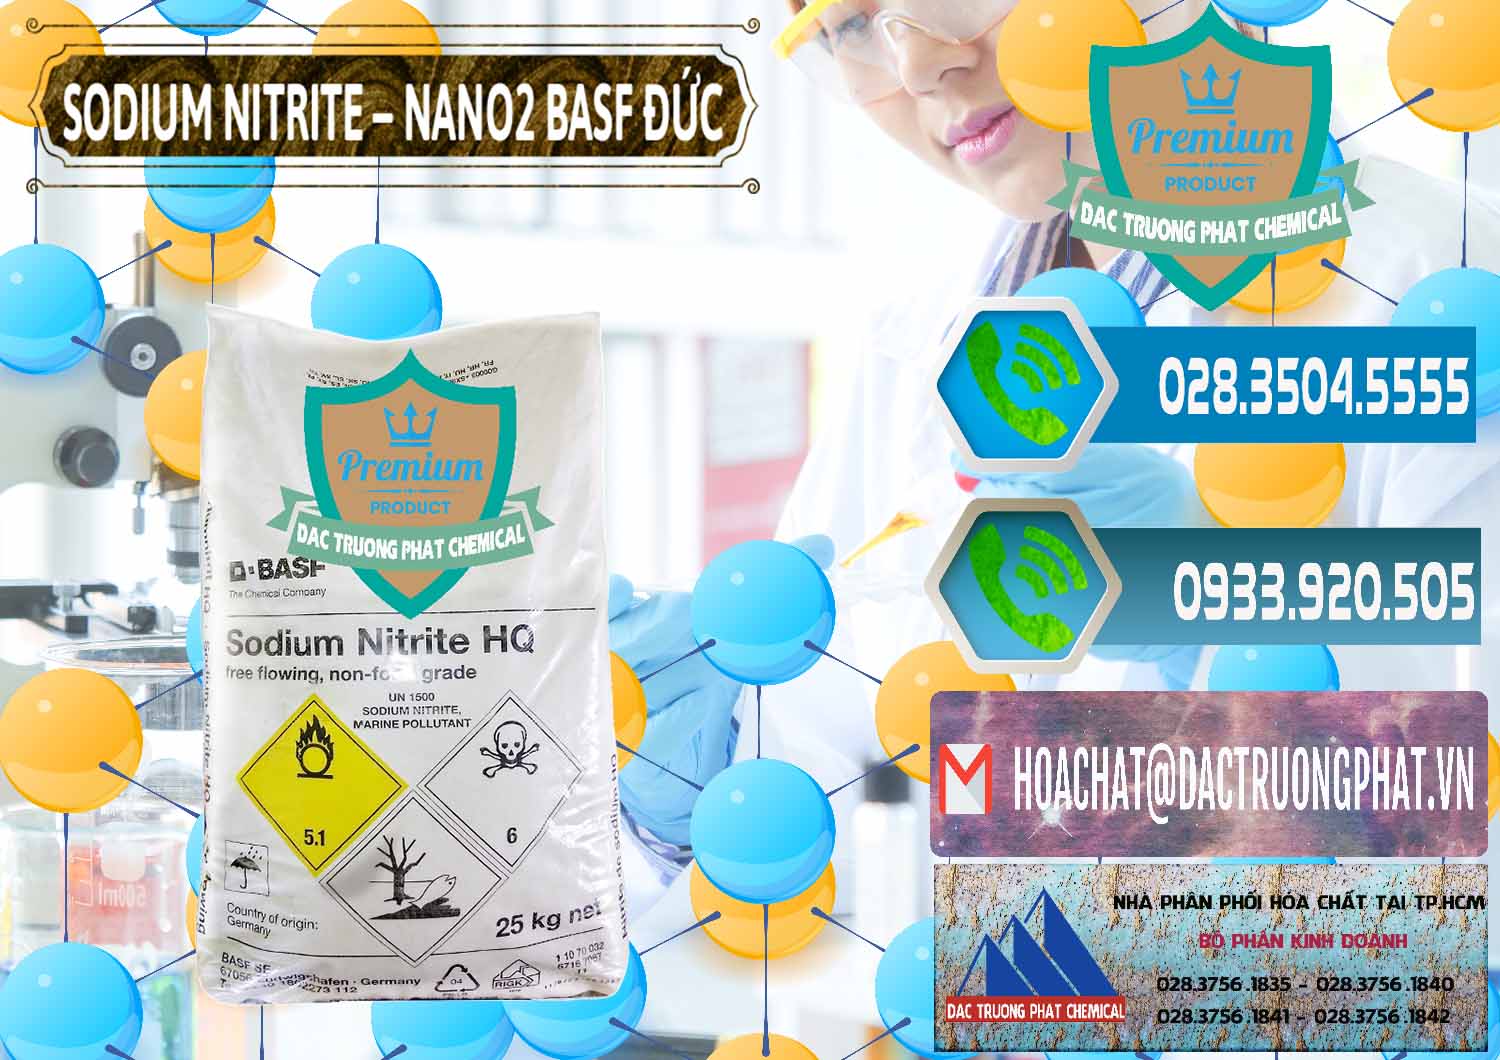 Đơn vị bán và phân phối Sodium Nitrite - NANO2 Đức BASF Germany - 0148 - Đơn vị chuyên phân phối ( nhập khẩu ) hóa chất tại TP.HCM - congtyhoachat.net